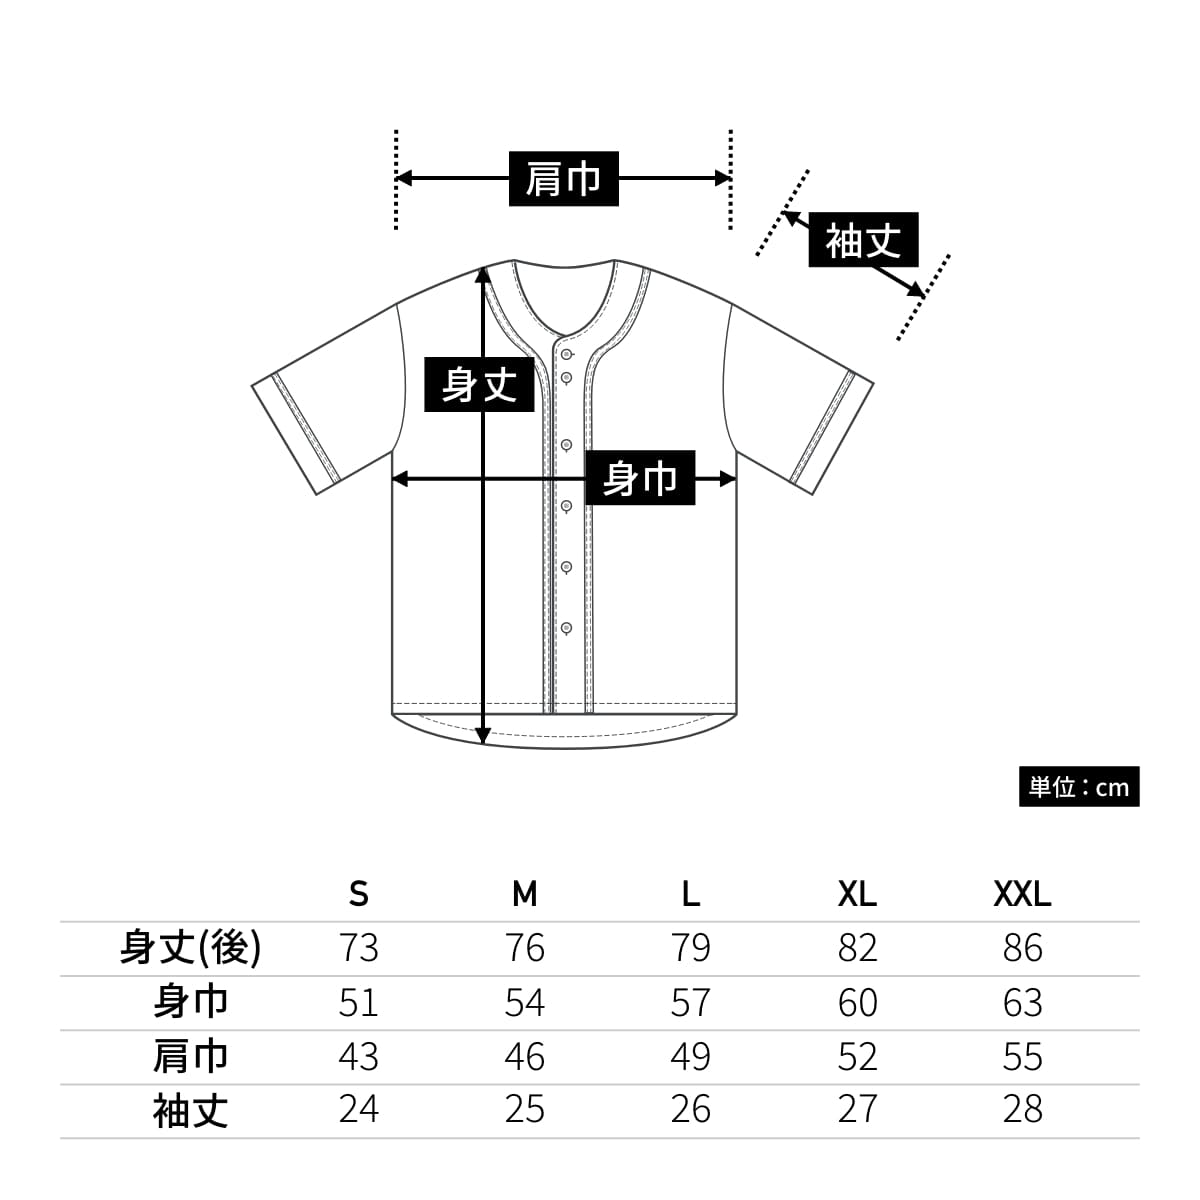 4.1オンス ドライアスレチック ベースボールシャツ | ビッグサイズ | 1 